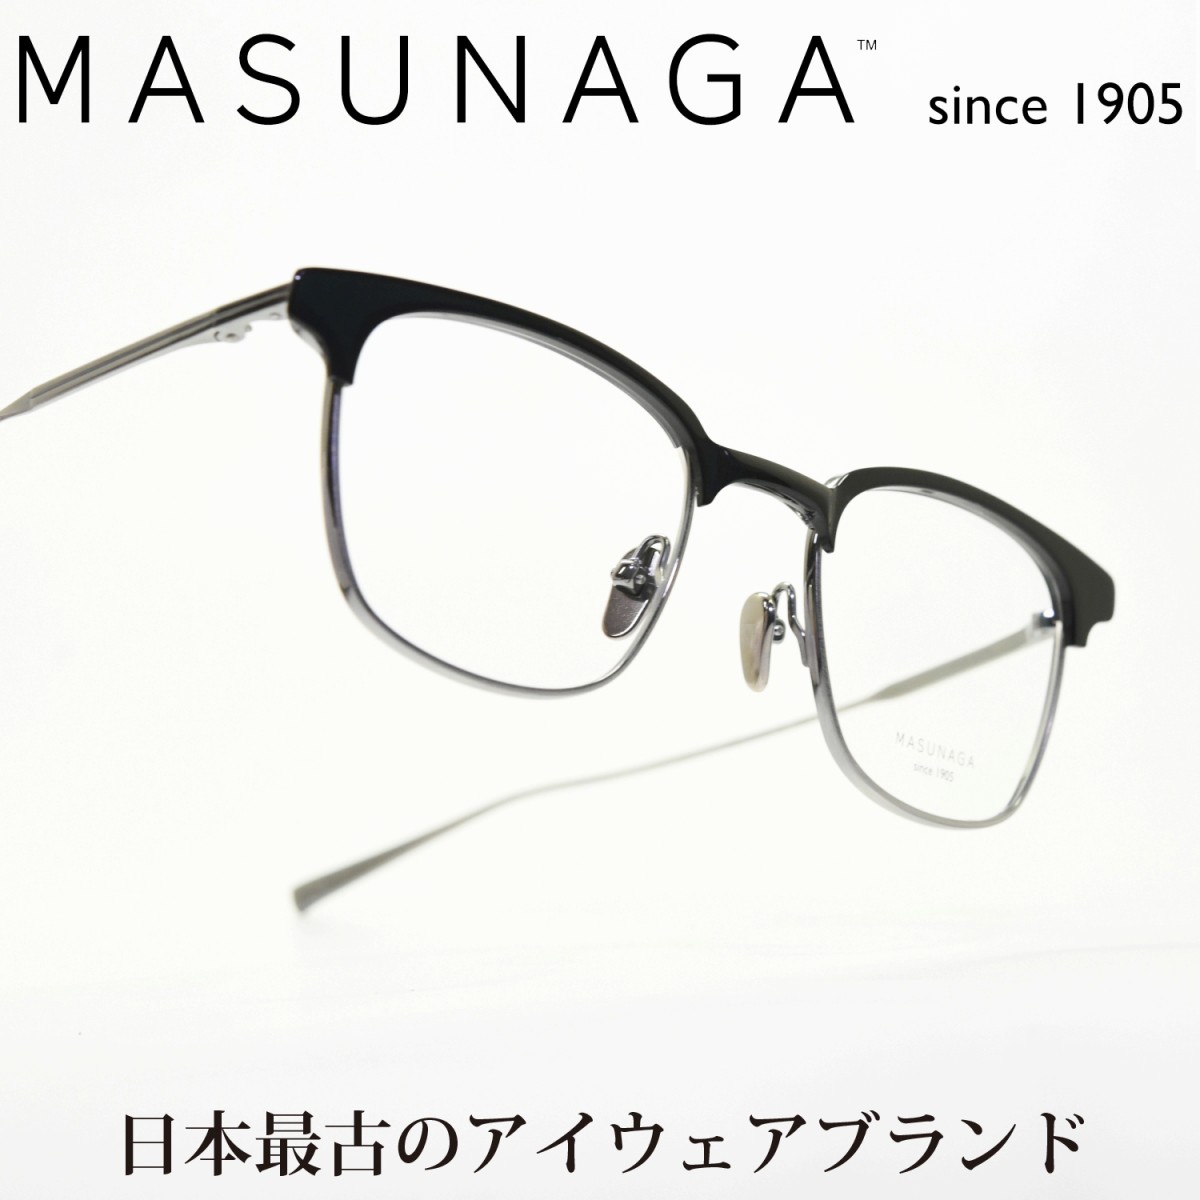 増永眼鏡 MASUNAGA since 1905 FULLER col-39 BK/AT-S